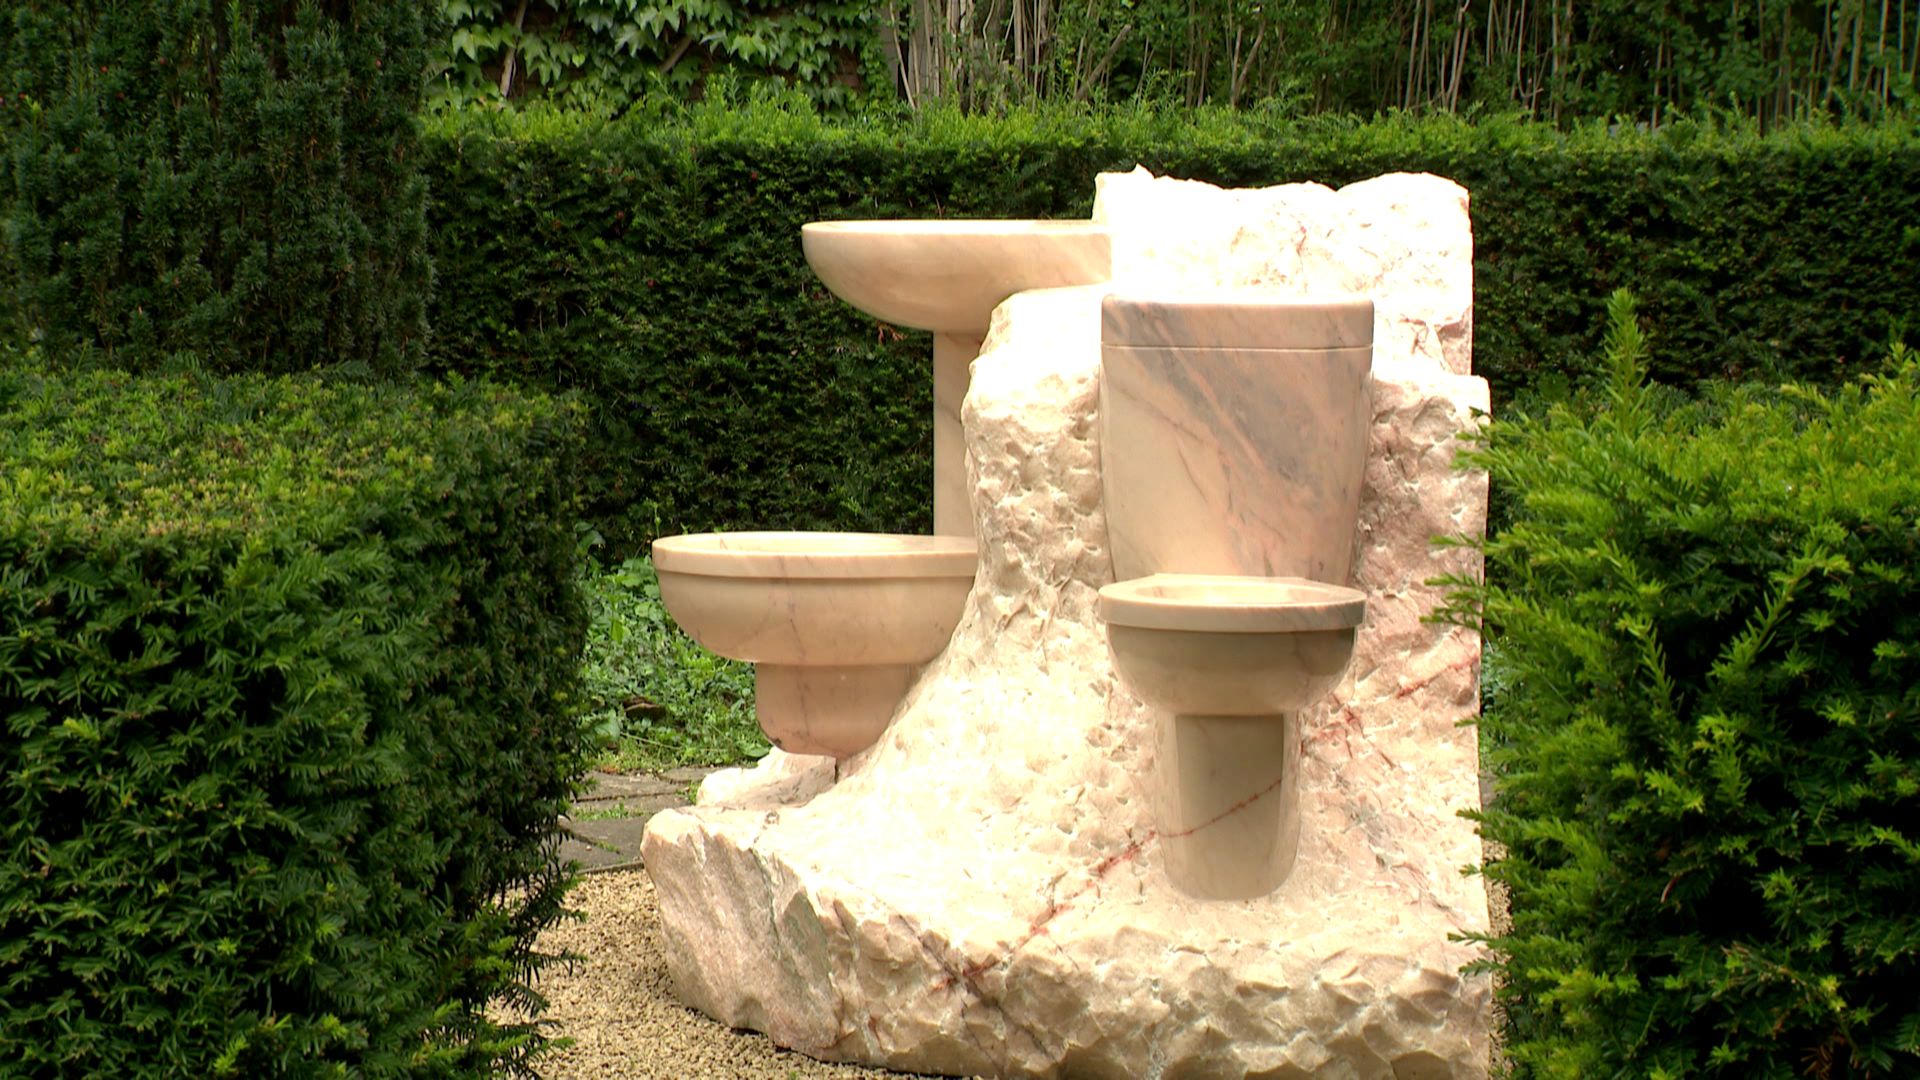 Oeuvre en marbre du duo de sculpteurs Daniel Dewar et Grégory Gicquel invité au Musée et Jardins Van Buuren à Uccle